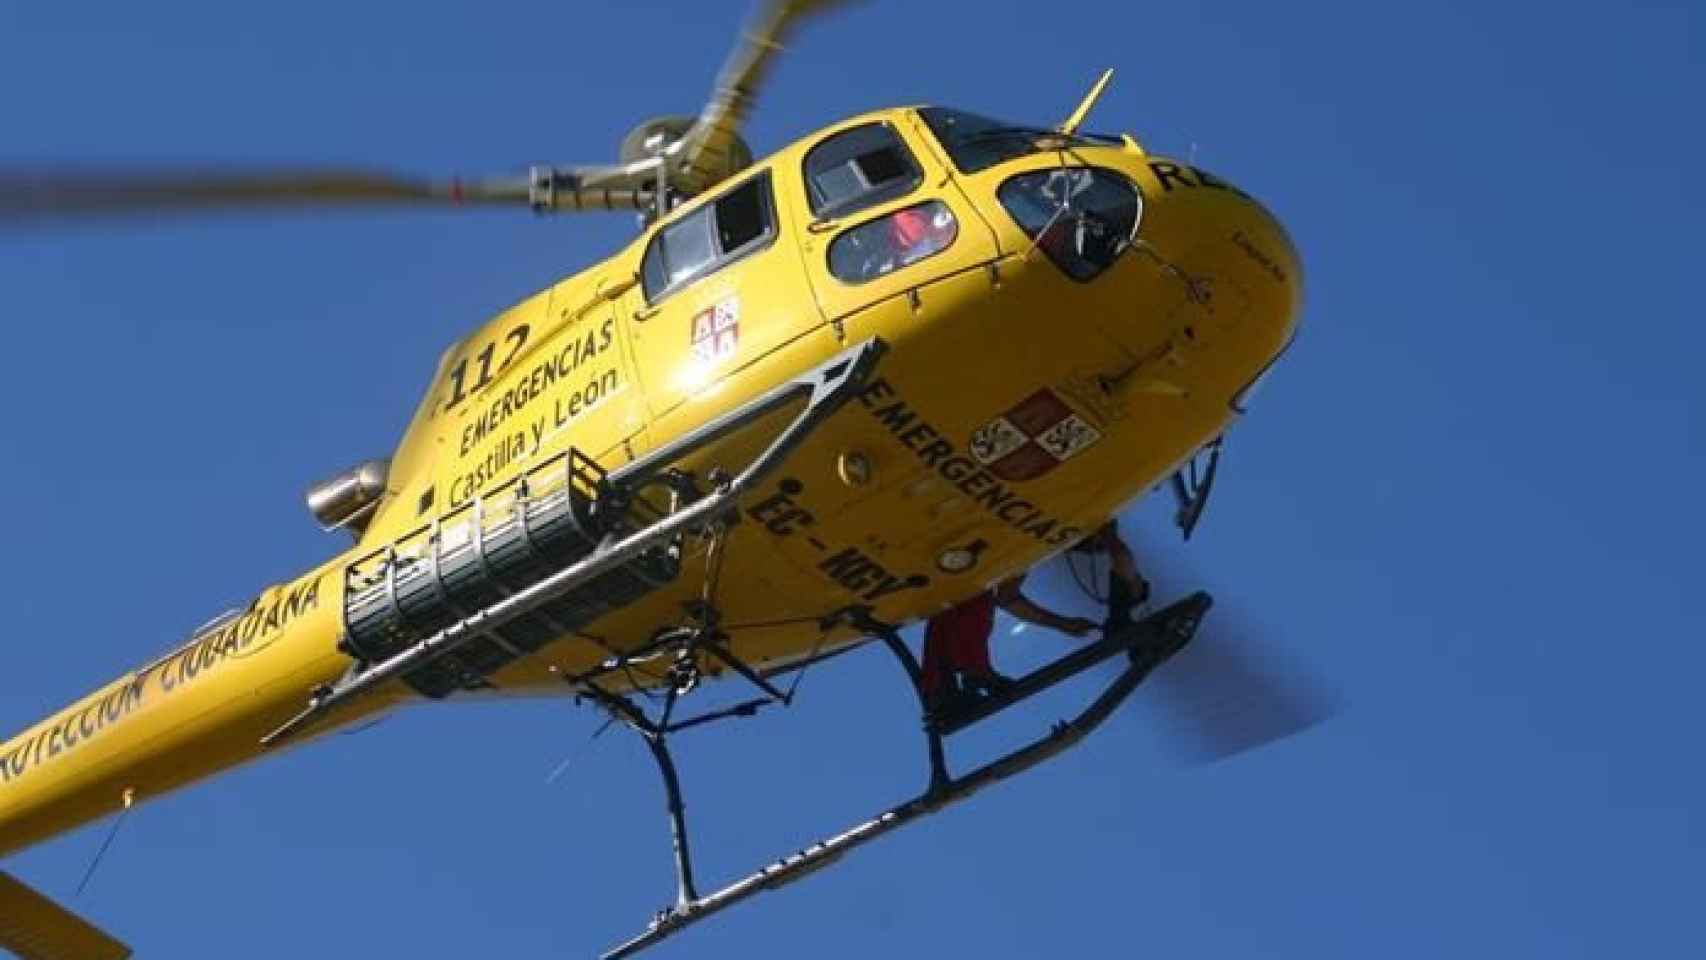 Helicoptero rescate emergencias 112 Valladolid